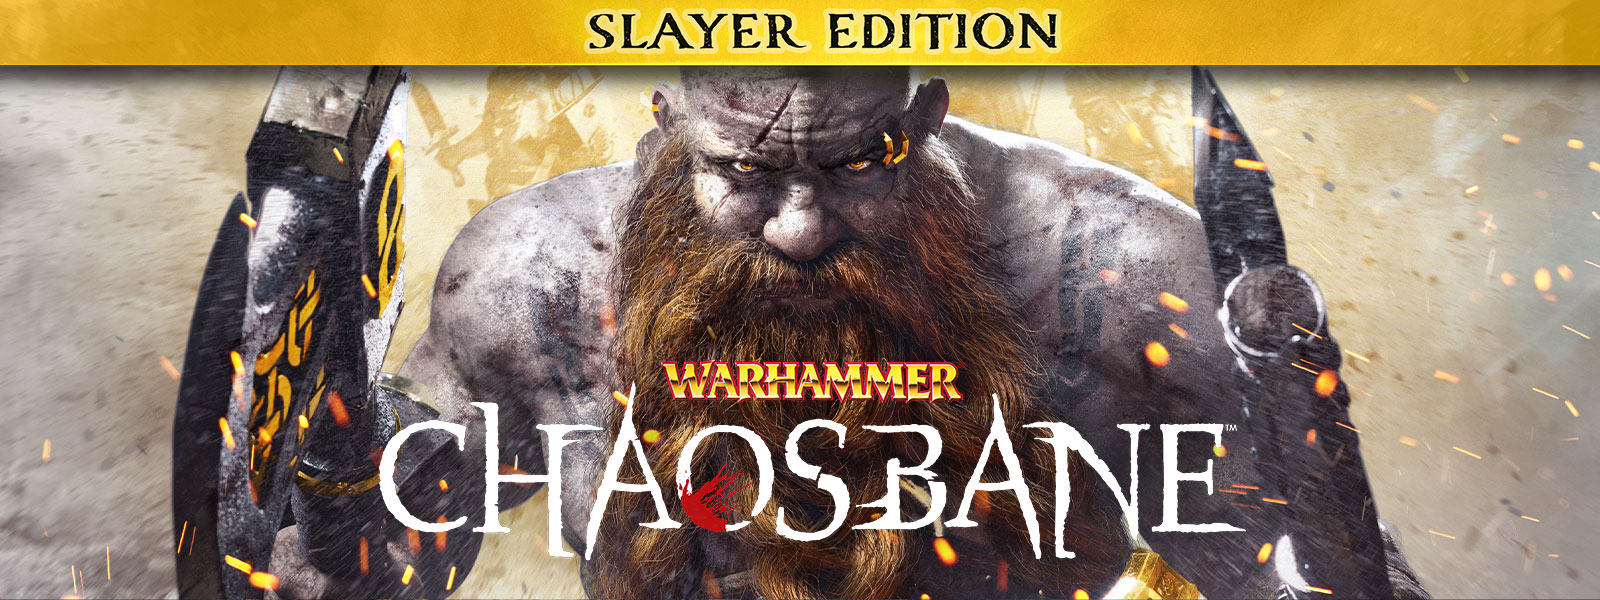 Warhammer: Chaosbane, Slayer Edition, parrakas mies harppoo liekkien läpi kirves kummassakin kädessään.